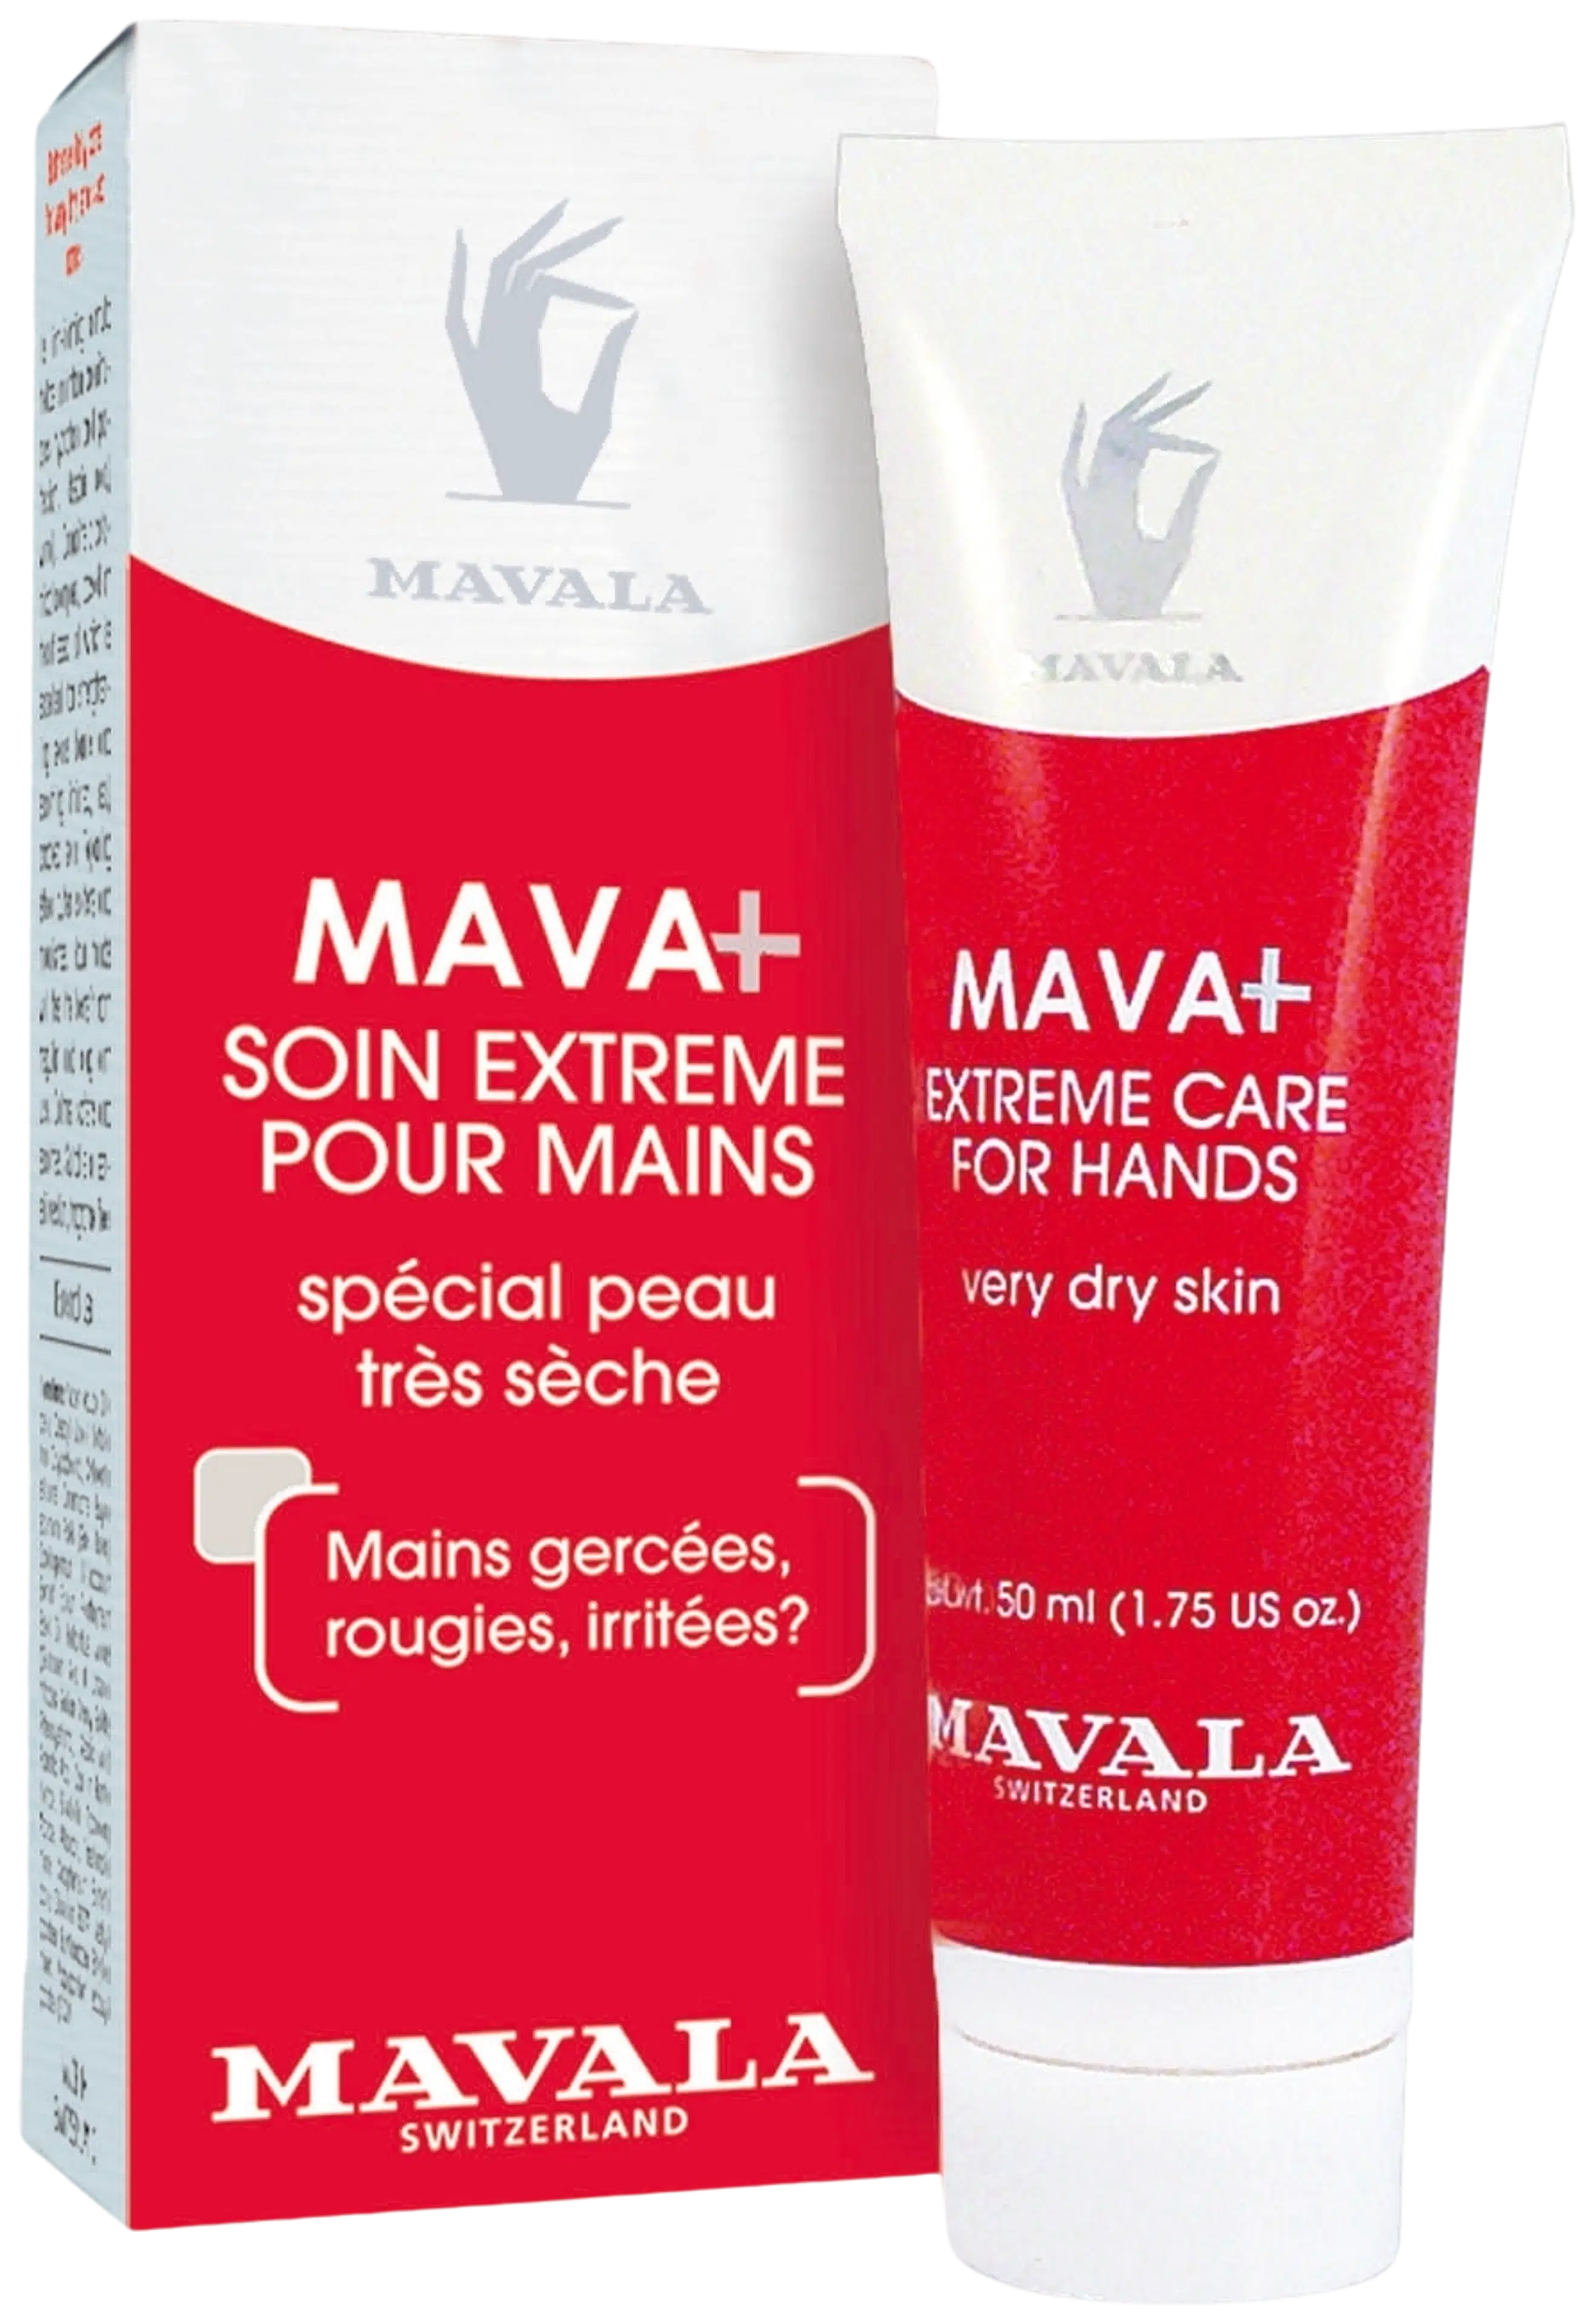 Mavala 50ml Mava+ Hand Cream käsivoide erittäin kuivalle iholle